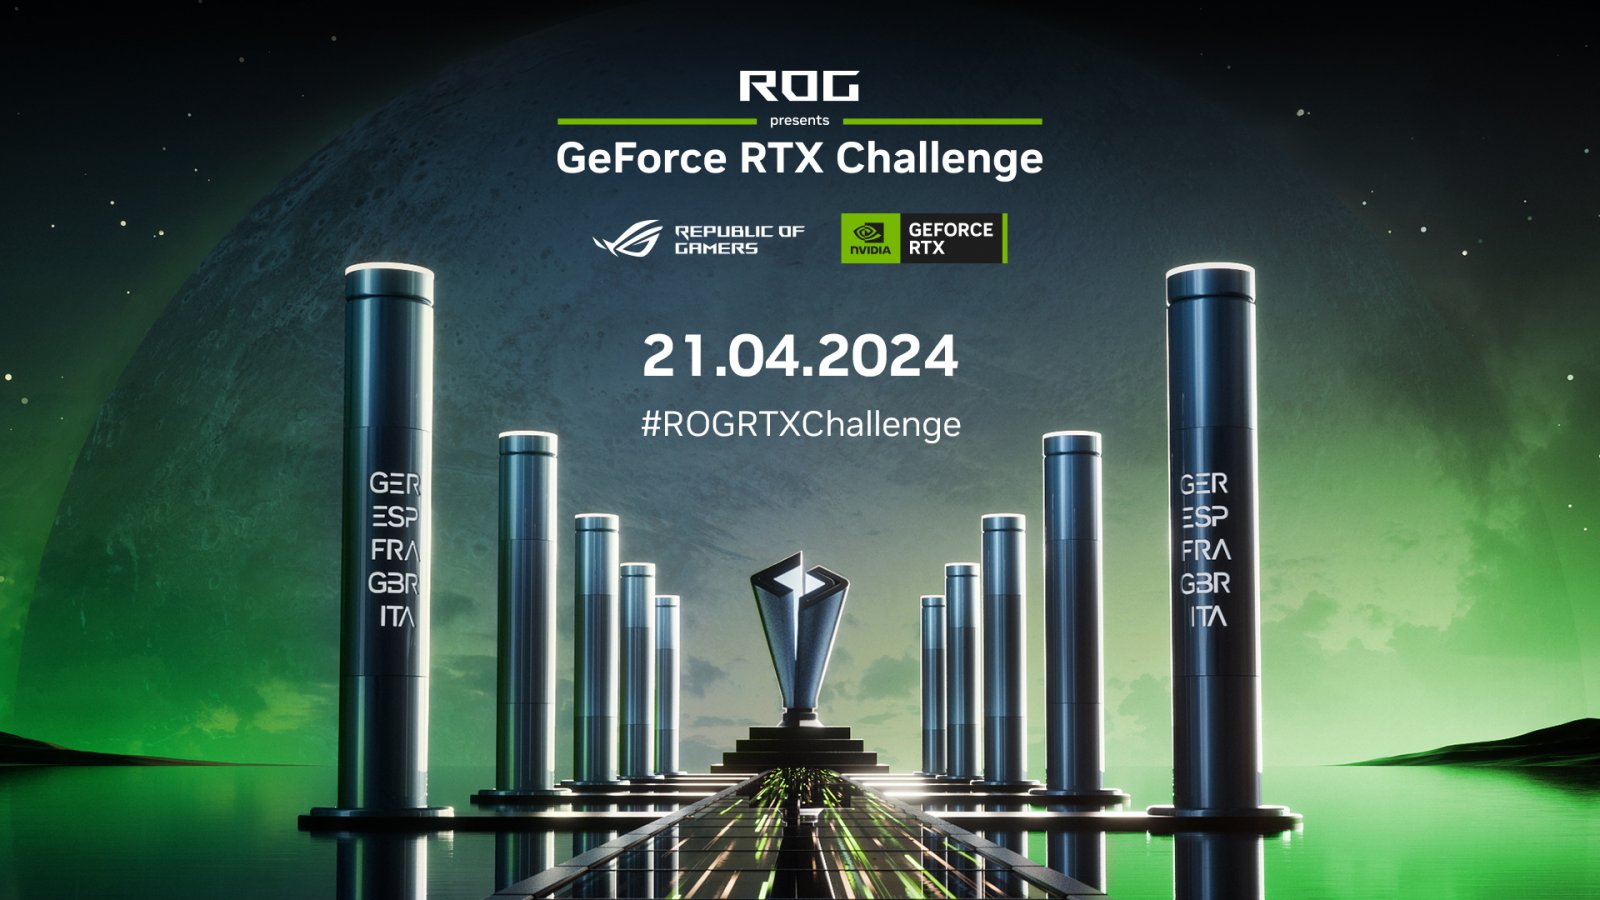 NVIDIA e ASUS ROG presentano la GeForce RTX Challenge, ecco tutti i dettagli